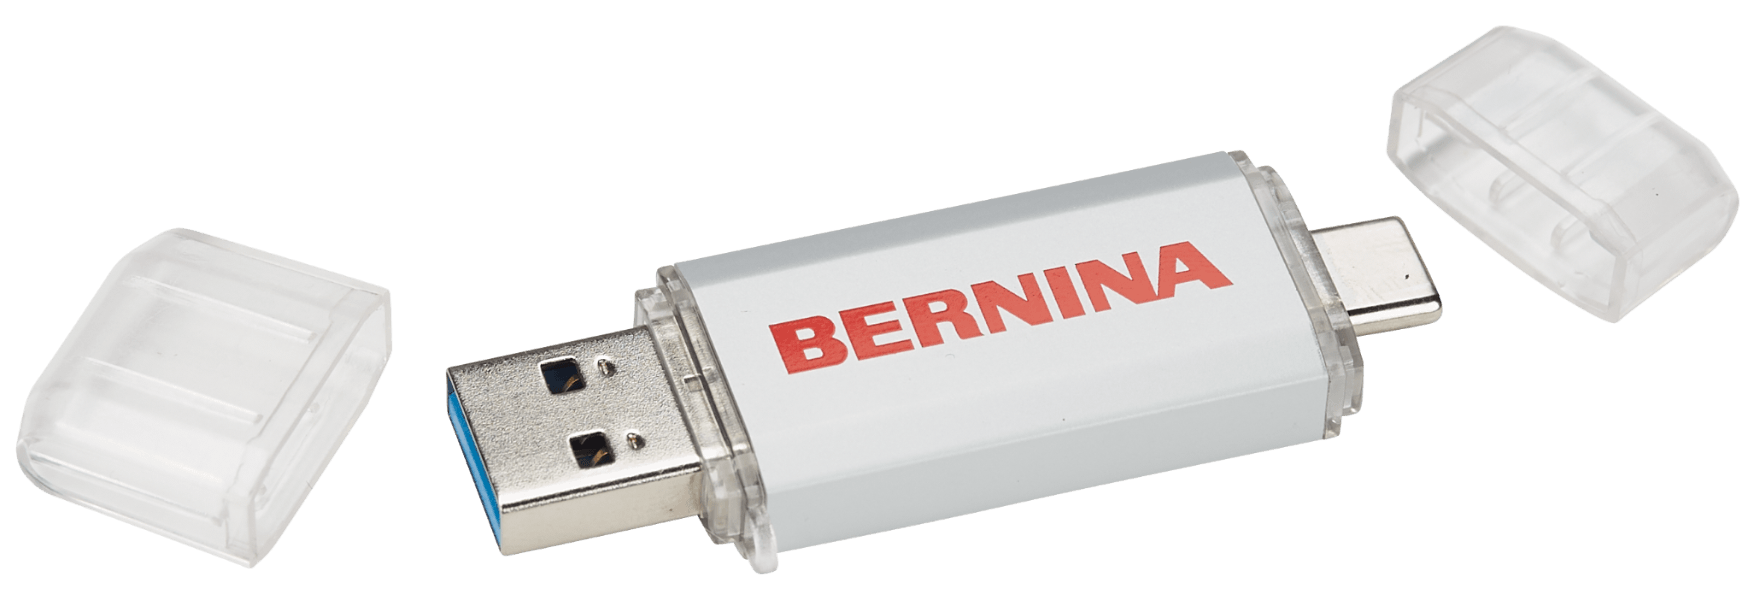 The USB Stick - for mobile data exchange - BERNINA